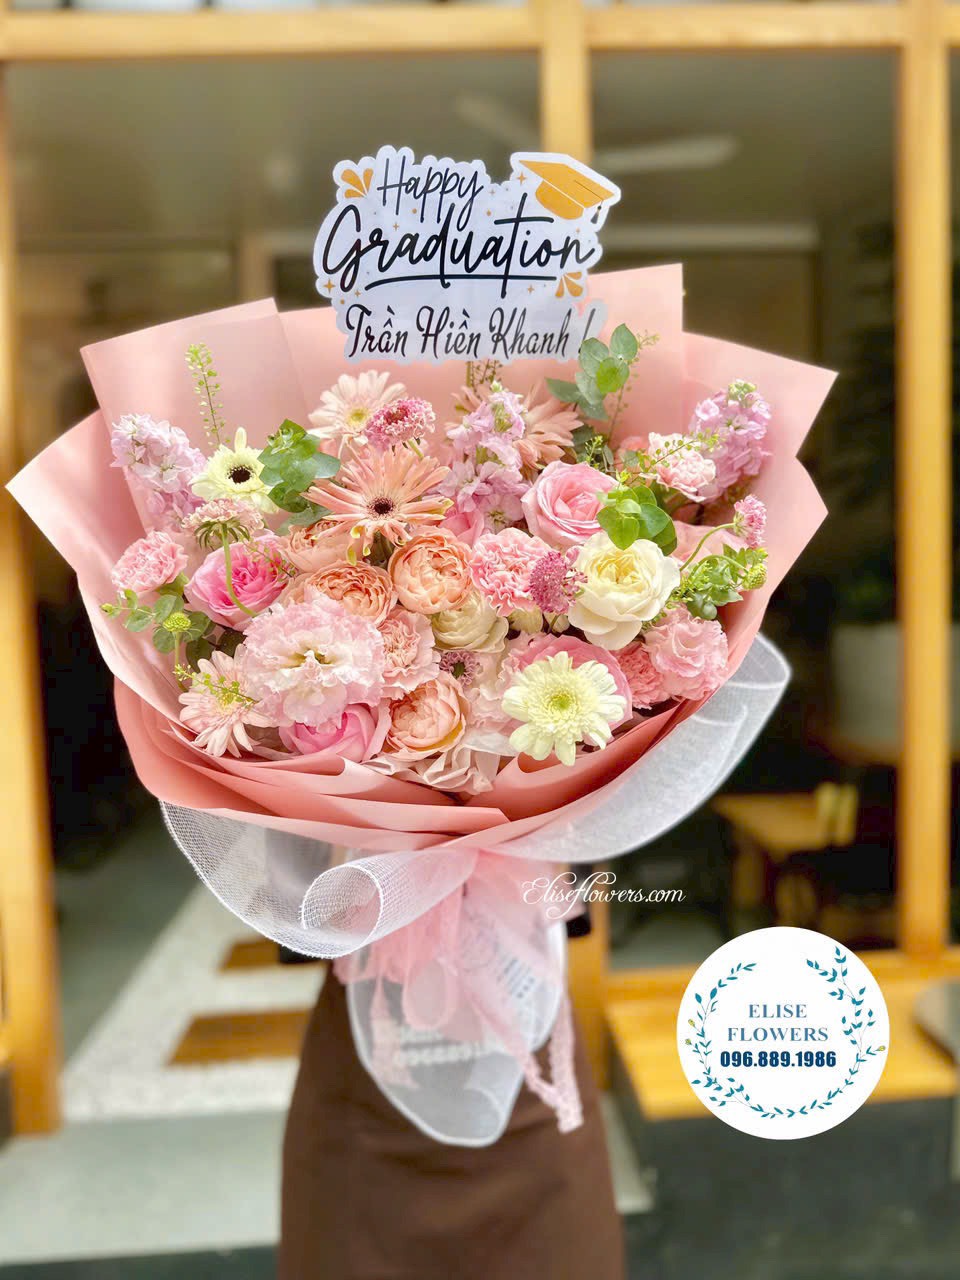 Đặt bó hoa tặng tốt nghiệp tại Tiệm hoa Eliseflowers. Đặt hoa tốt nghiệp Hà Nội